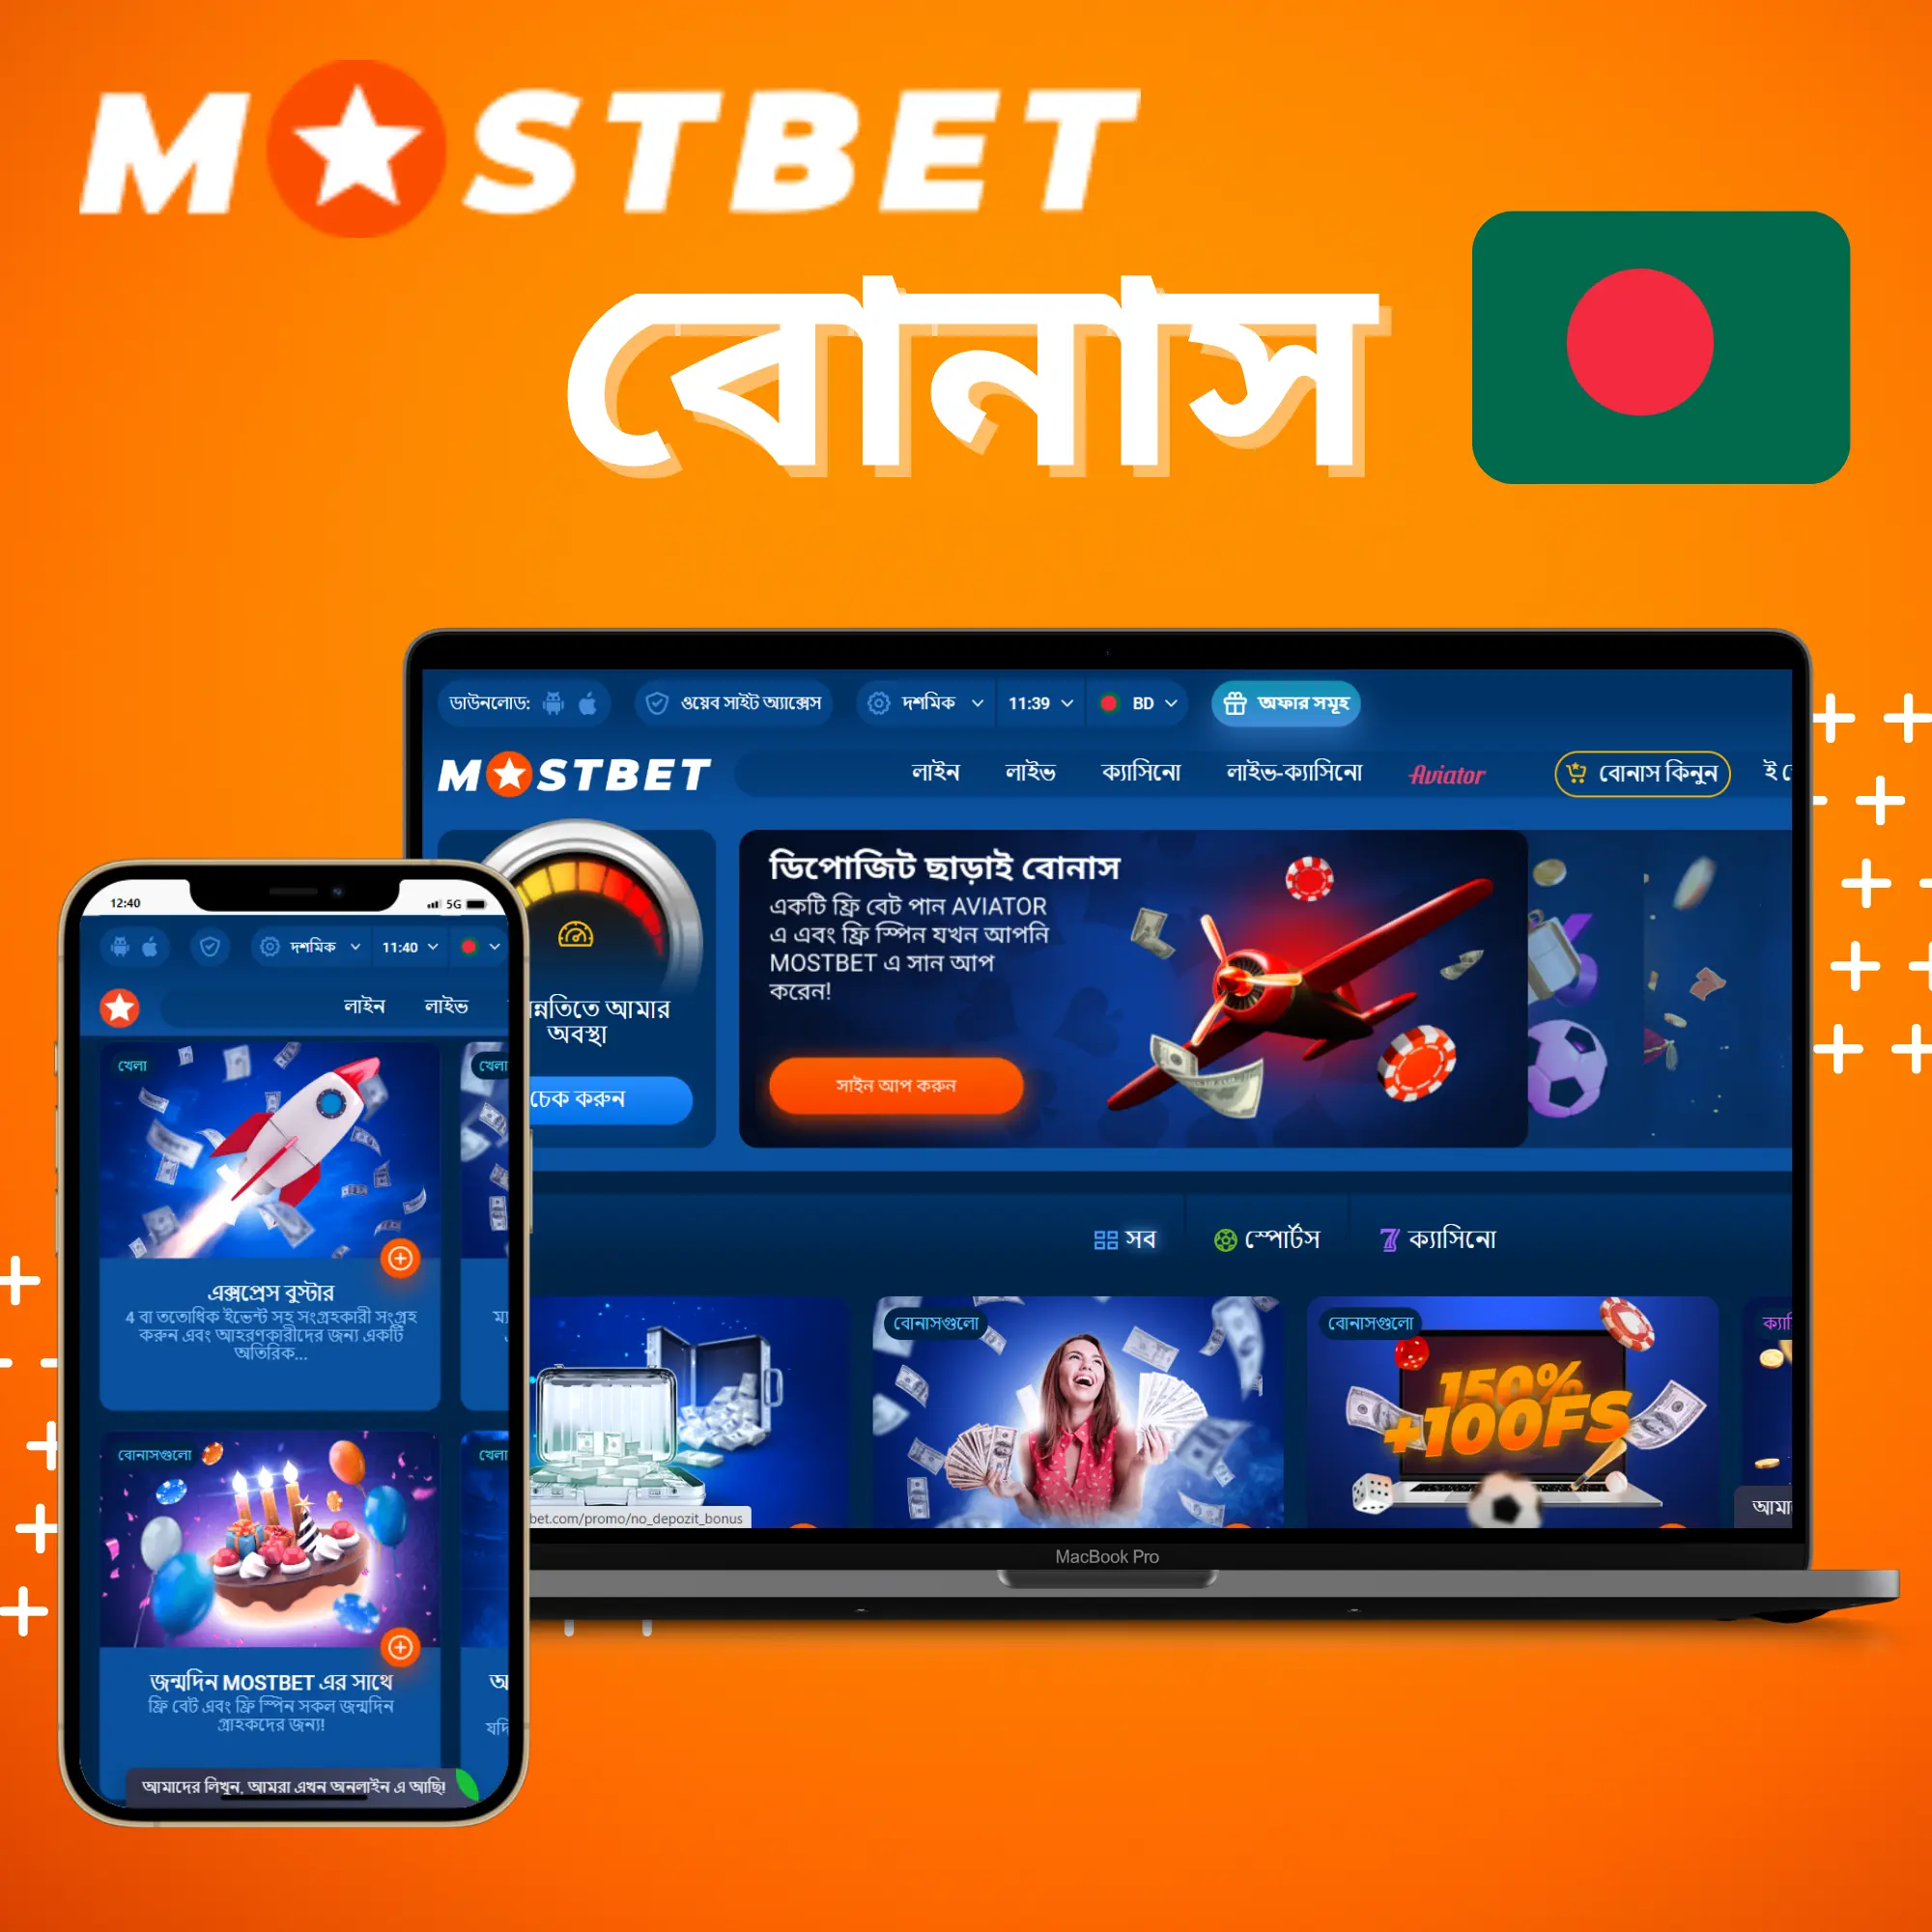 Bonuses at Mostbet in Bangladesh